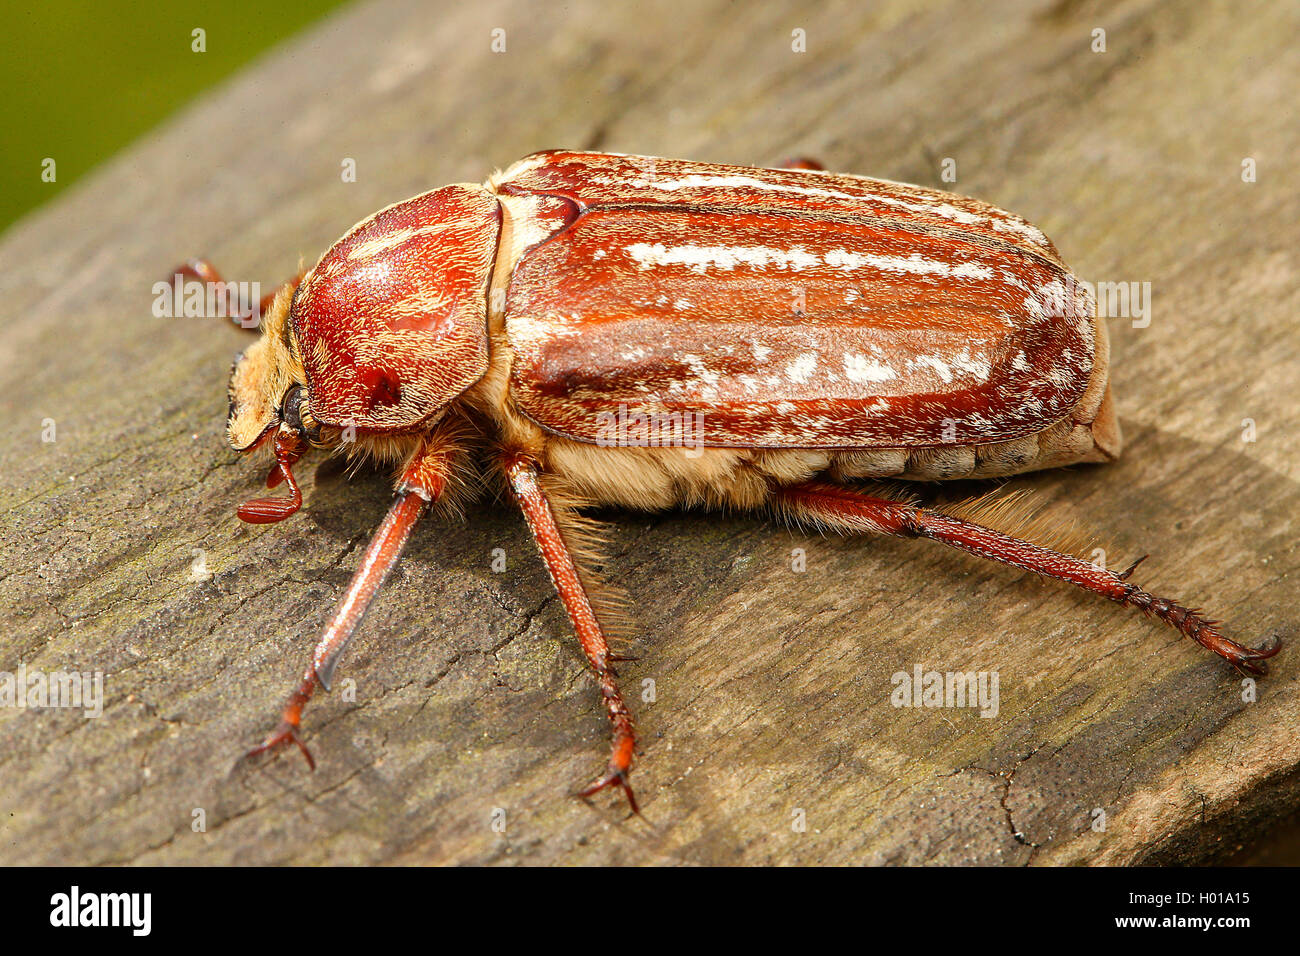 Escarabajos del estiércol (Anoxia orientalis), sobre madera, Rumania Foto de stock